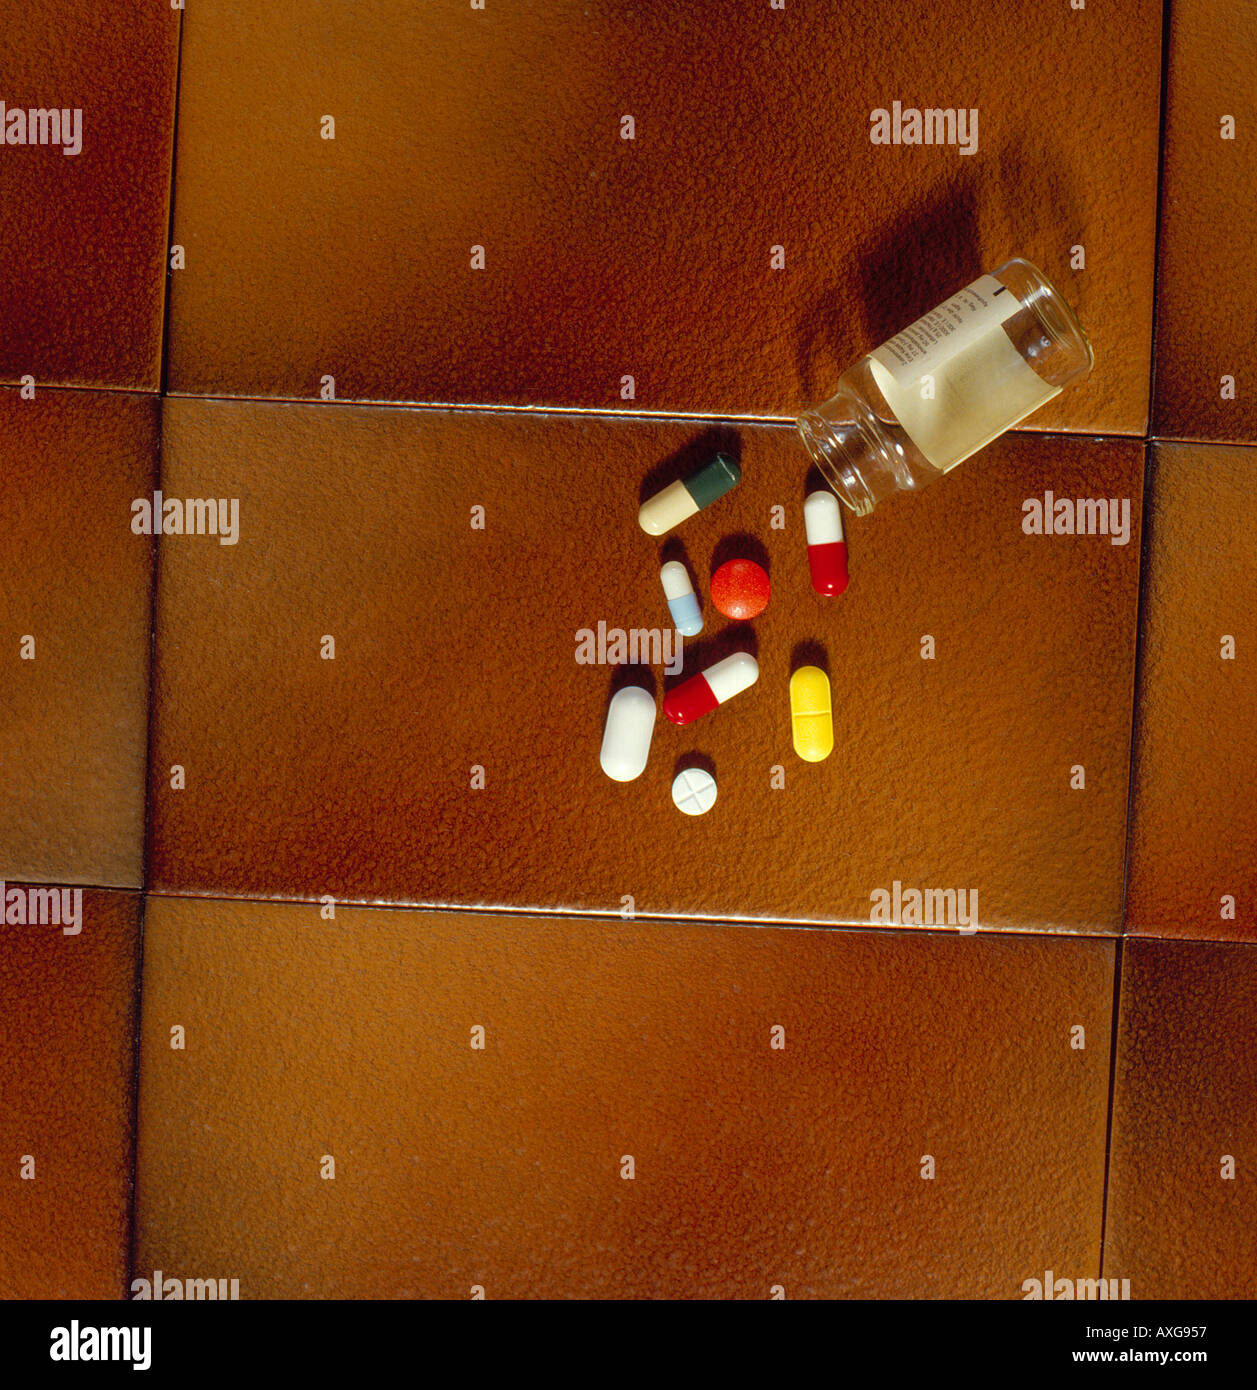 Medikamente aus einer Glasflasche fallen. Foto: Willy Matheisl Stockfoto